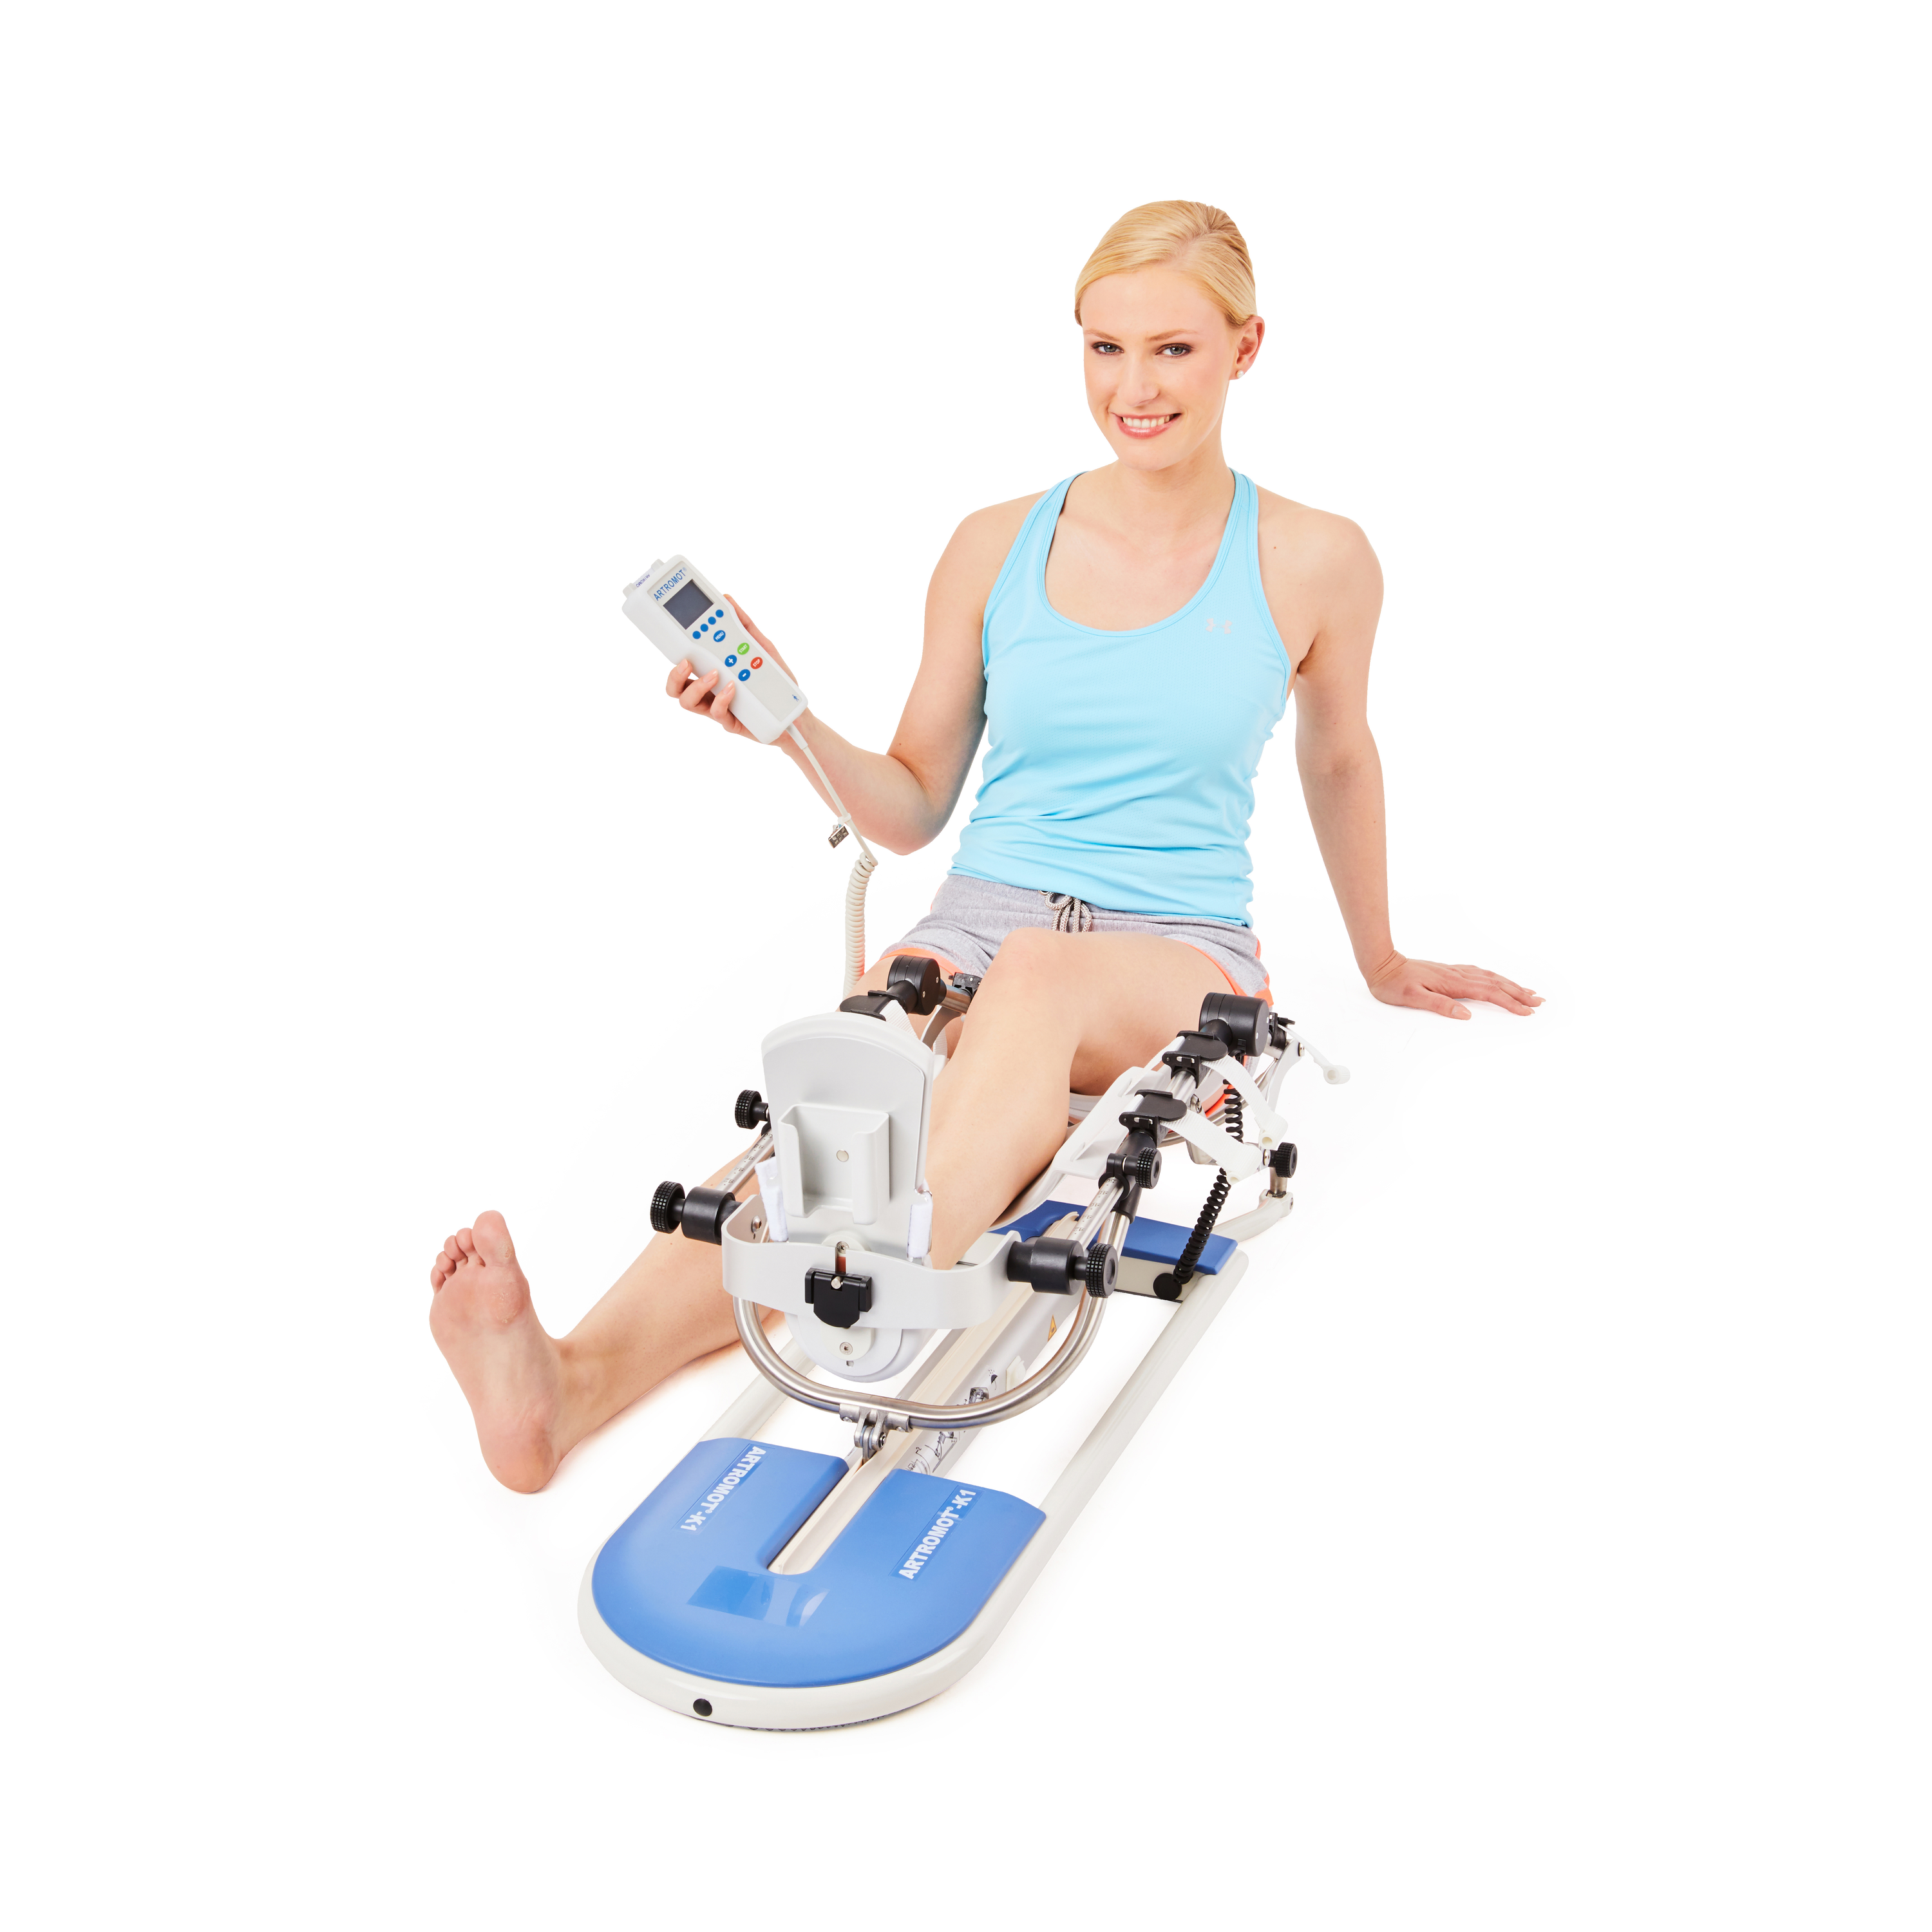 Produktbild ARTROMOT®-K1, Motorisierte Bewegungsschiene für das Knie- und Hüftgelenk